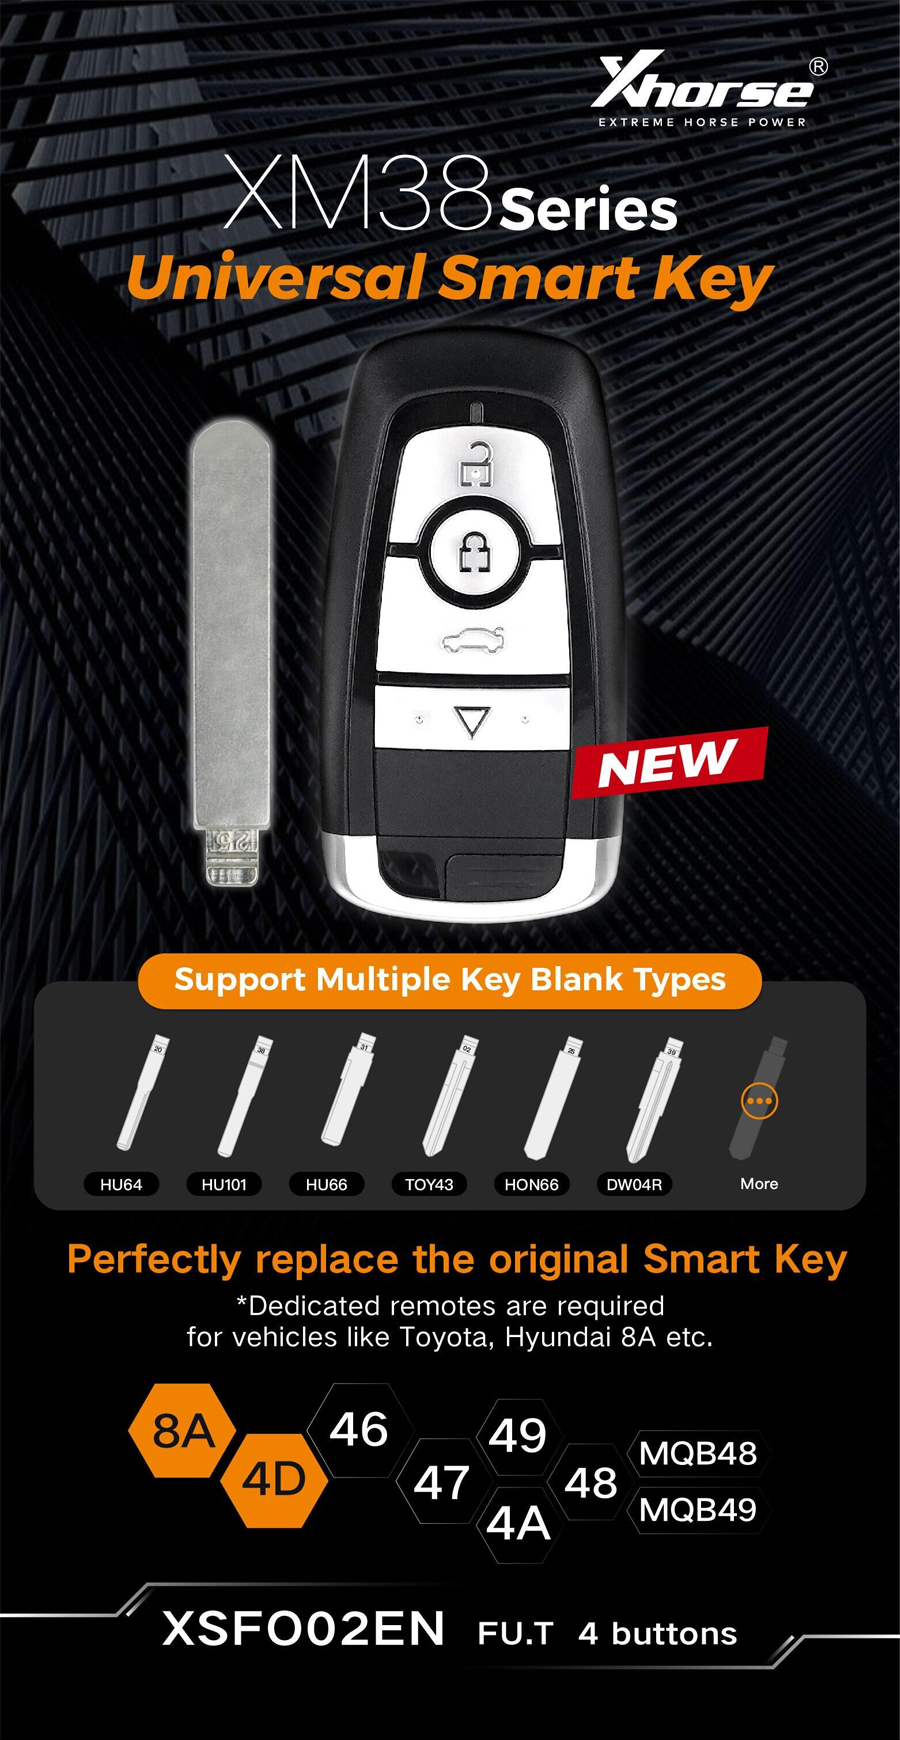 xhorse xm38 smart key